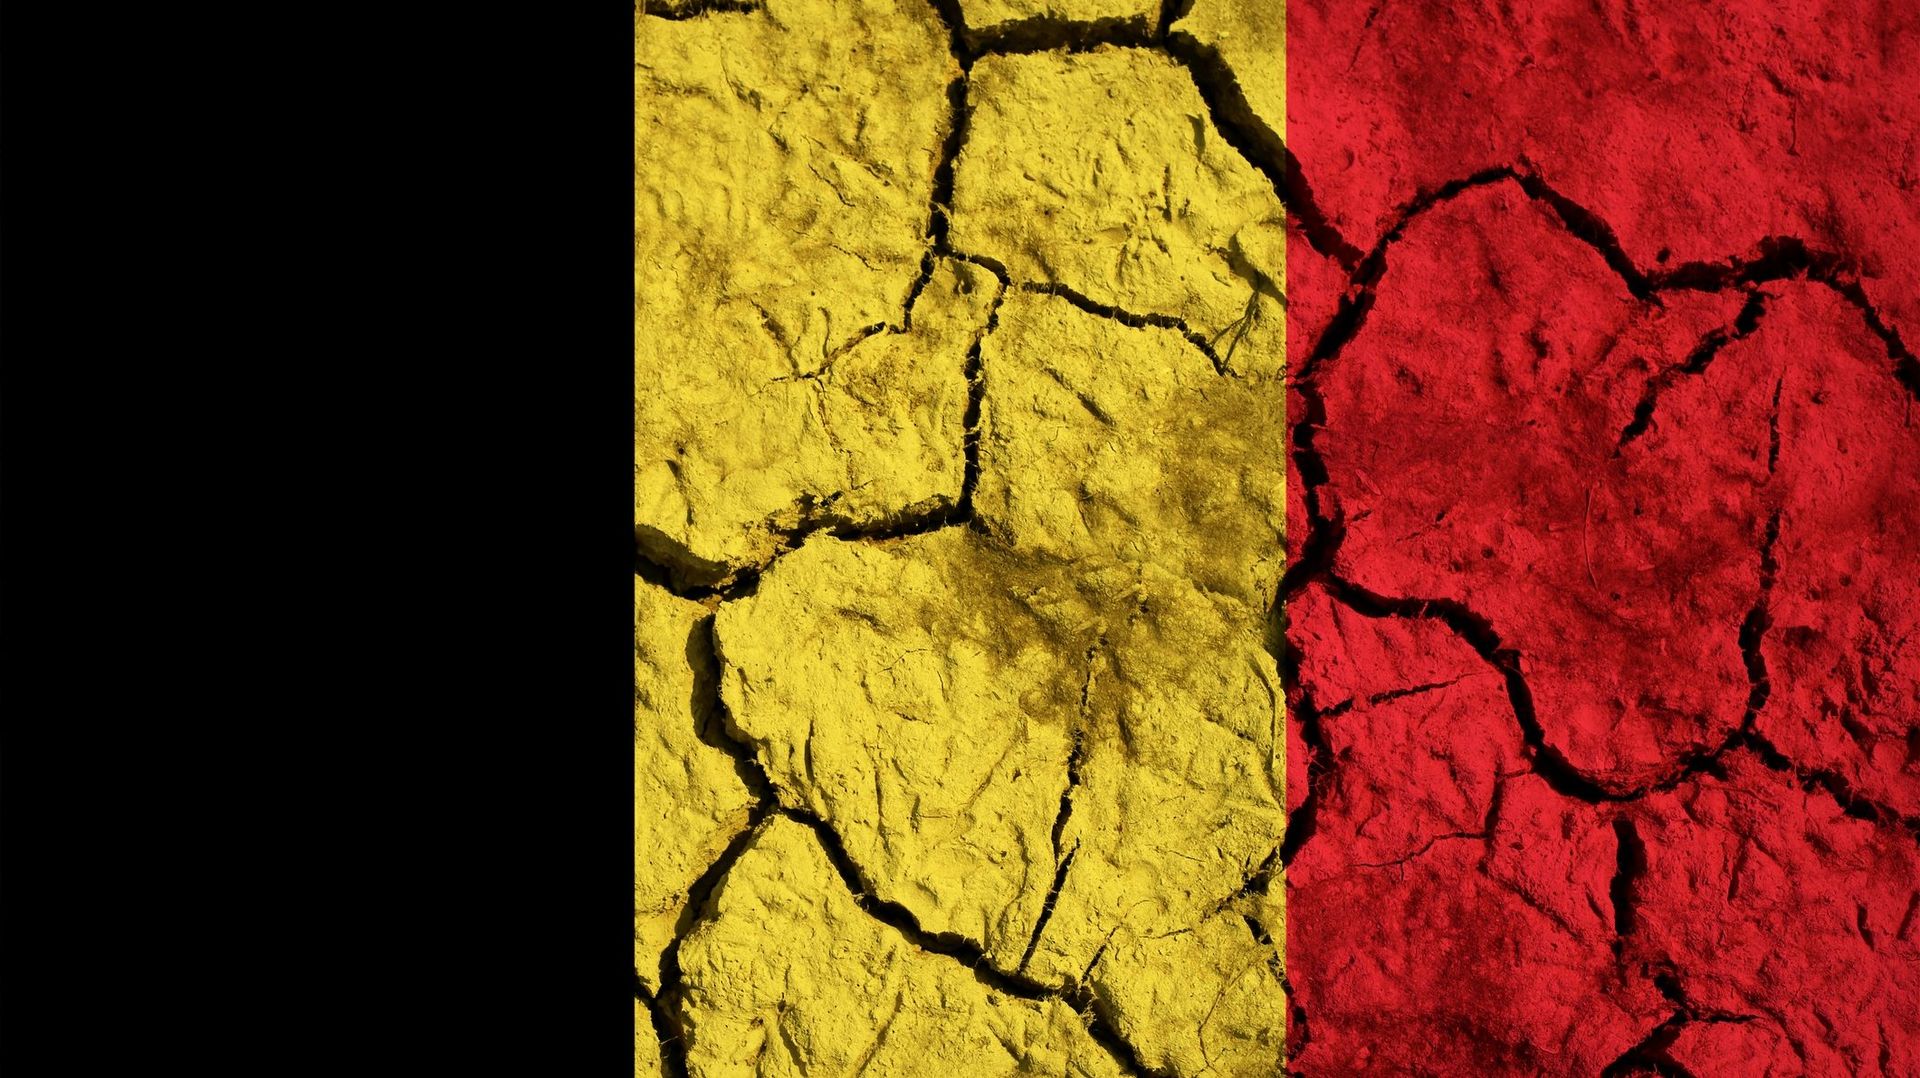 comment-le-dereglement-climatique-va-toucher-la-belgique-et-changer-notre-vie-quotidienne-avant-la-fin-du-siecle